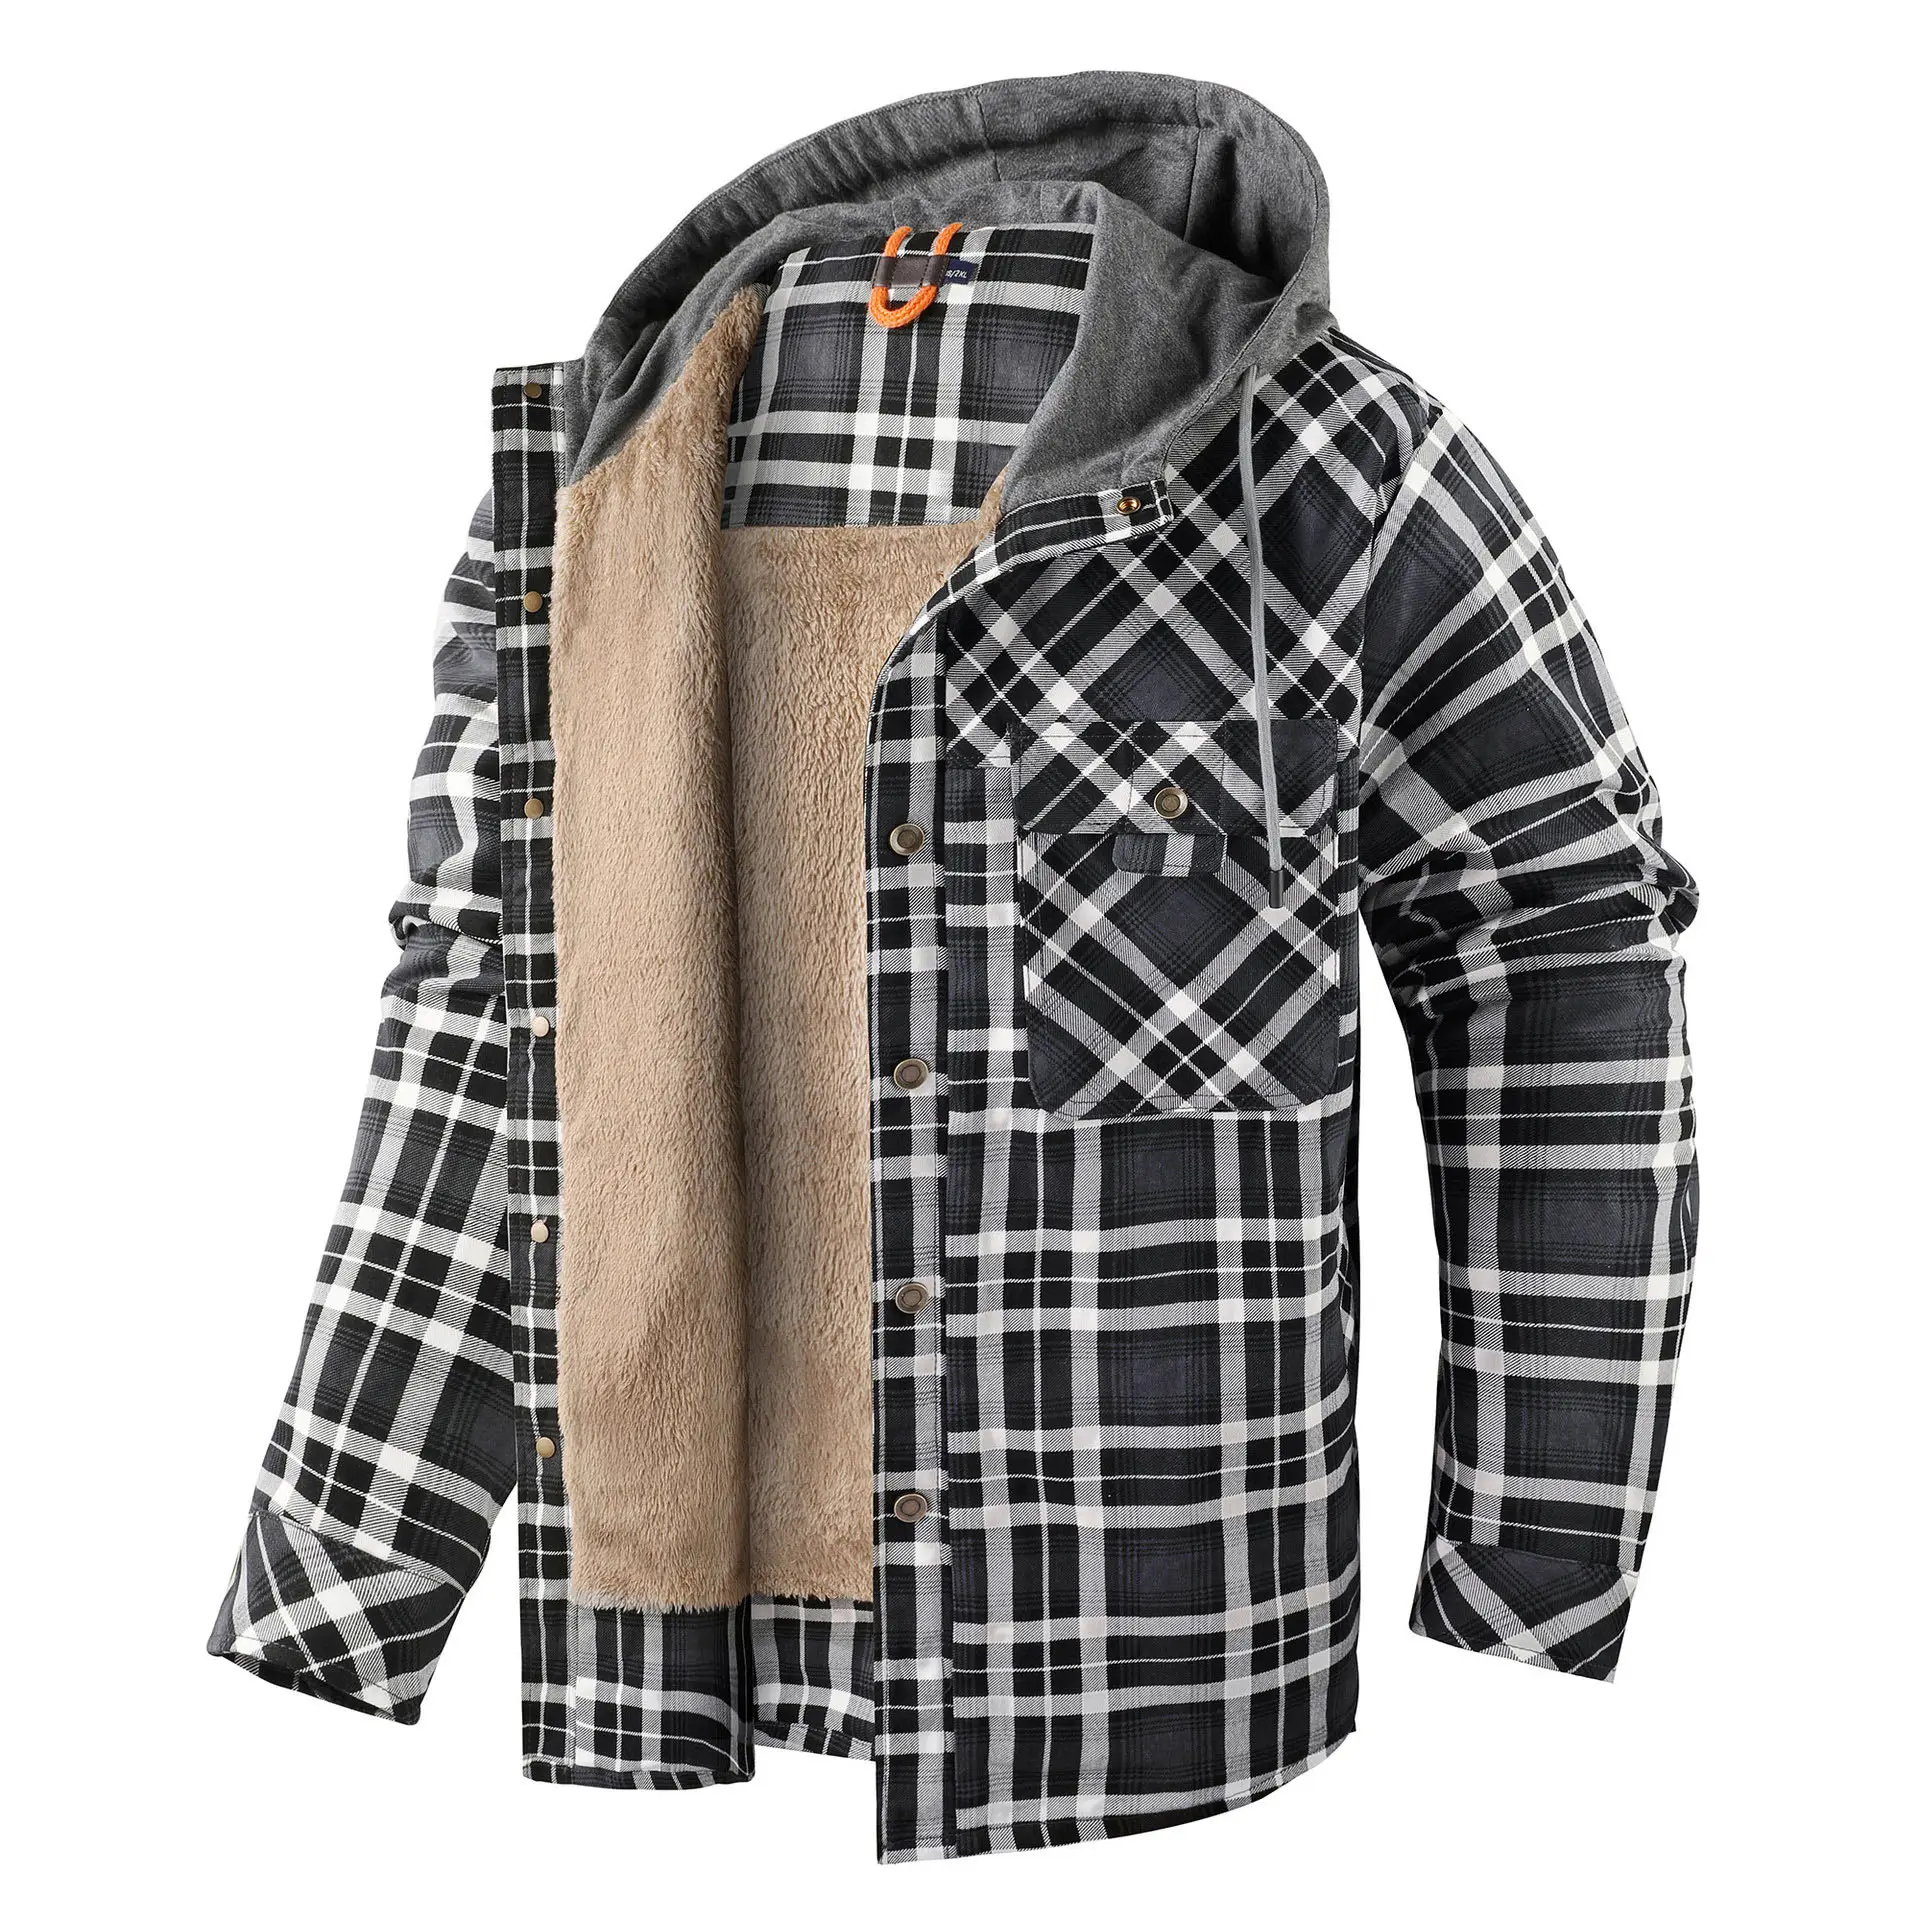 Мужская хлопковая клетчатая рубашка, куртка с флисовой подкладкой, фланелевые рубашки, пуховики с капюшоном для мужчин